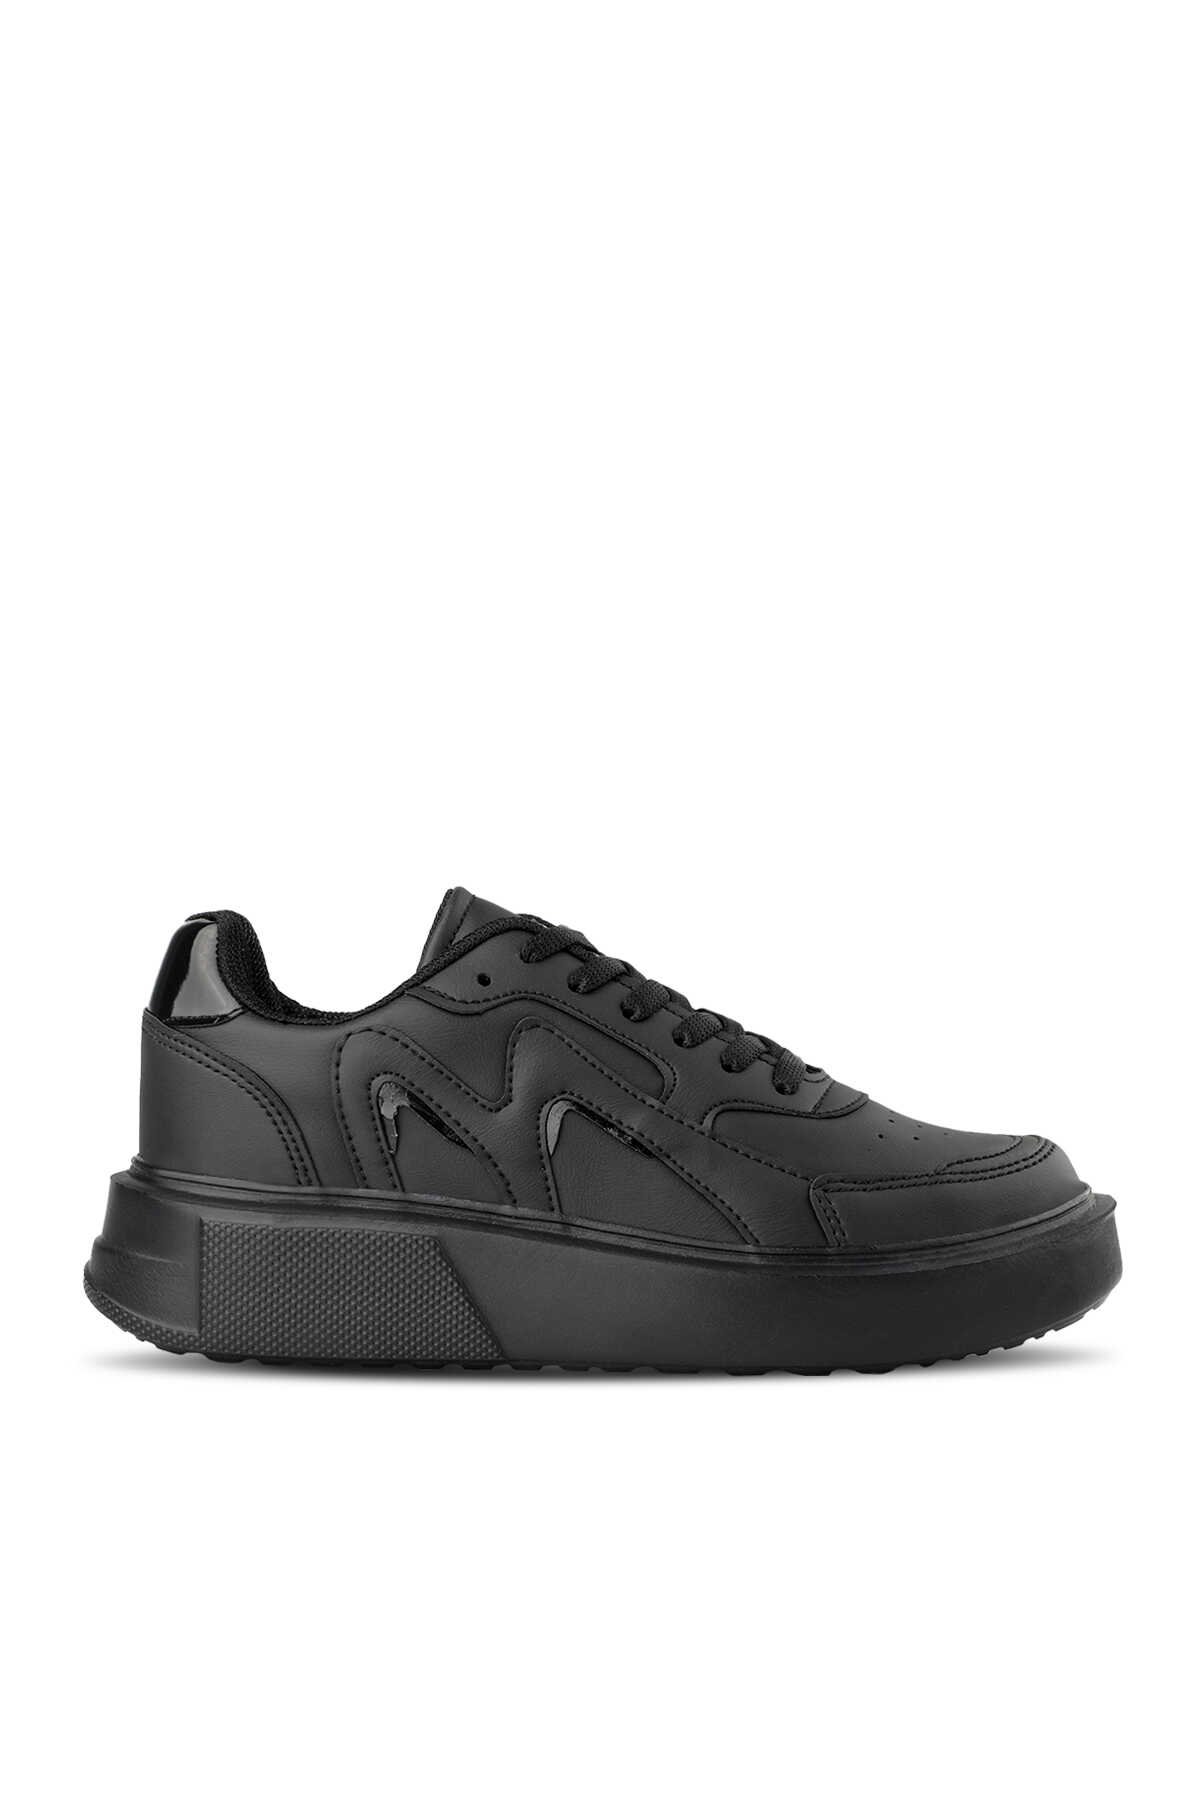 Slazenger - Slazenger ZENIA Sneaker Kadın Ayakkabı Siyah / Siyah